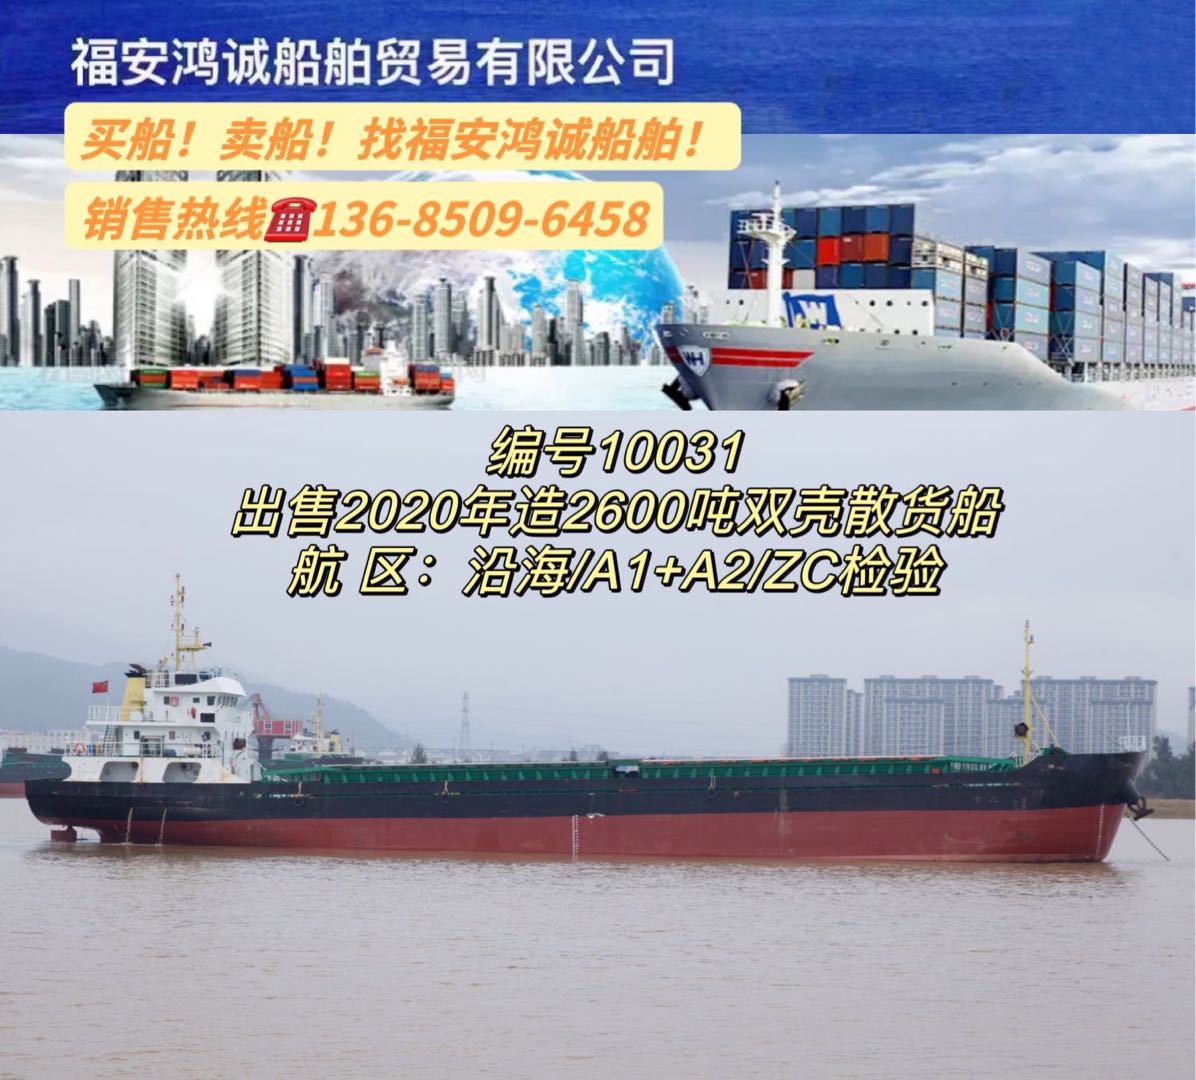 出售2600吨双壳散货船： 2020年浙江台州建造